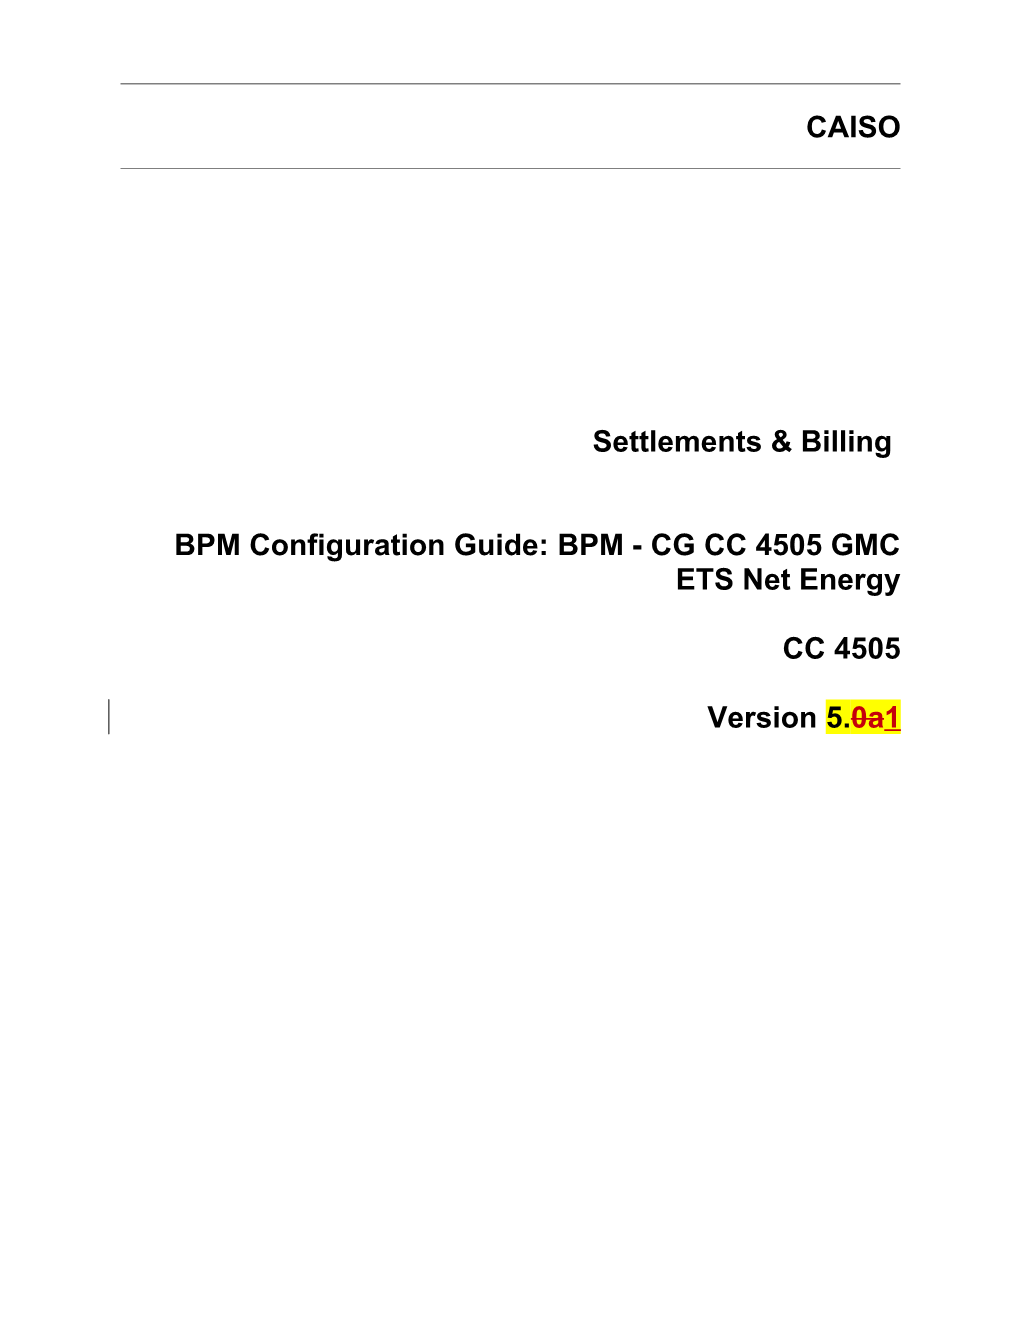 BPM - CG CC 4505 GMC ETS Net Energy